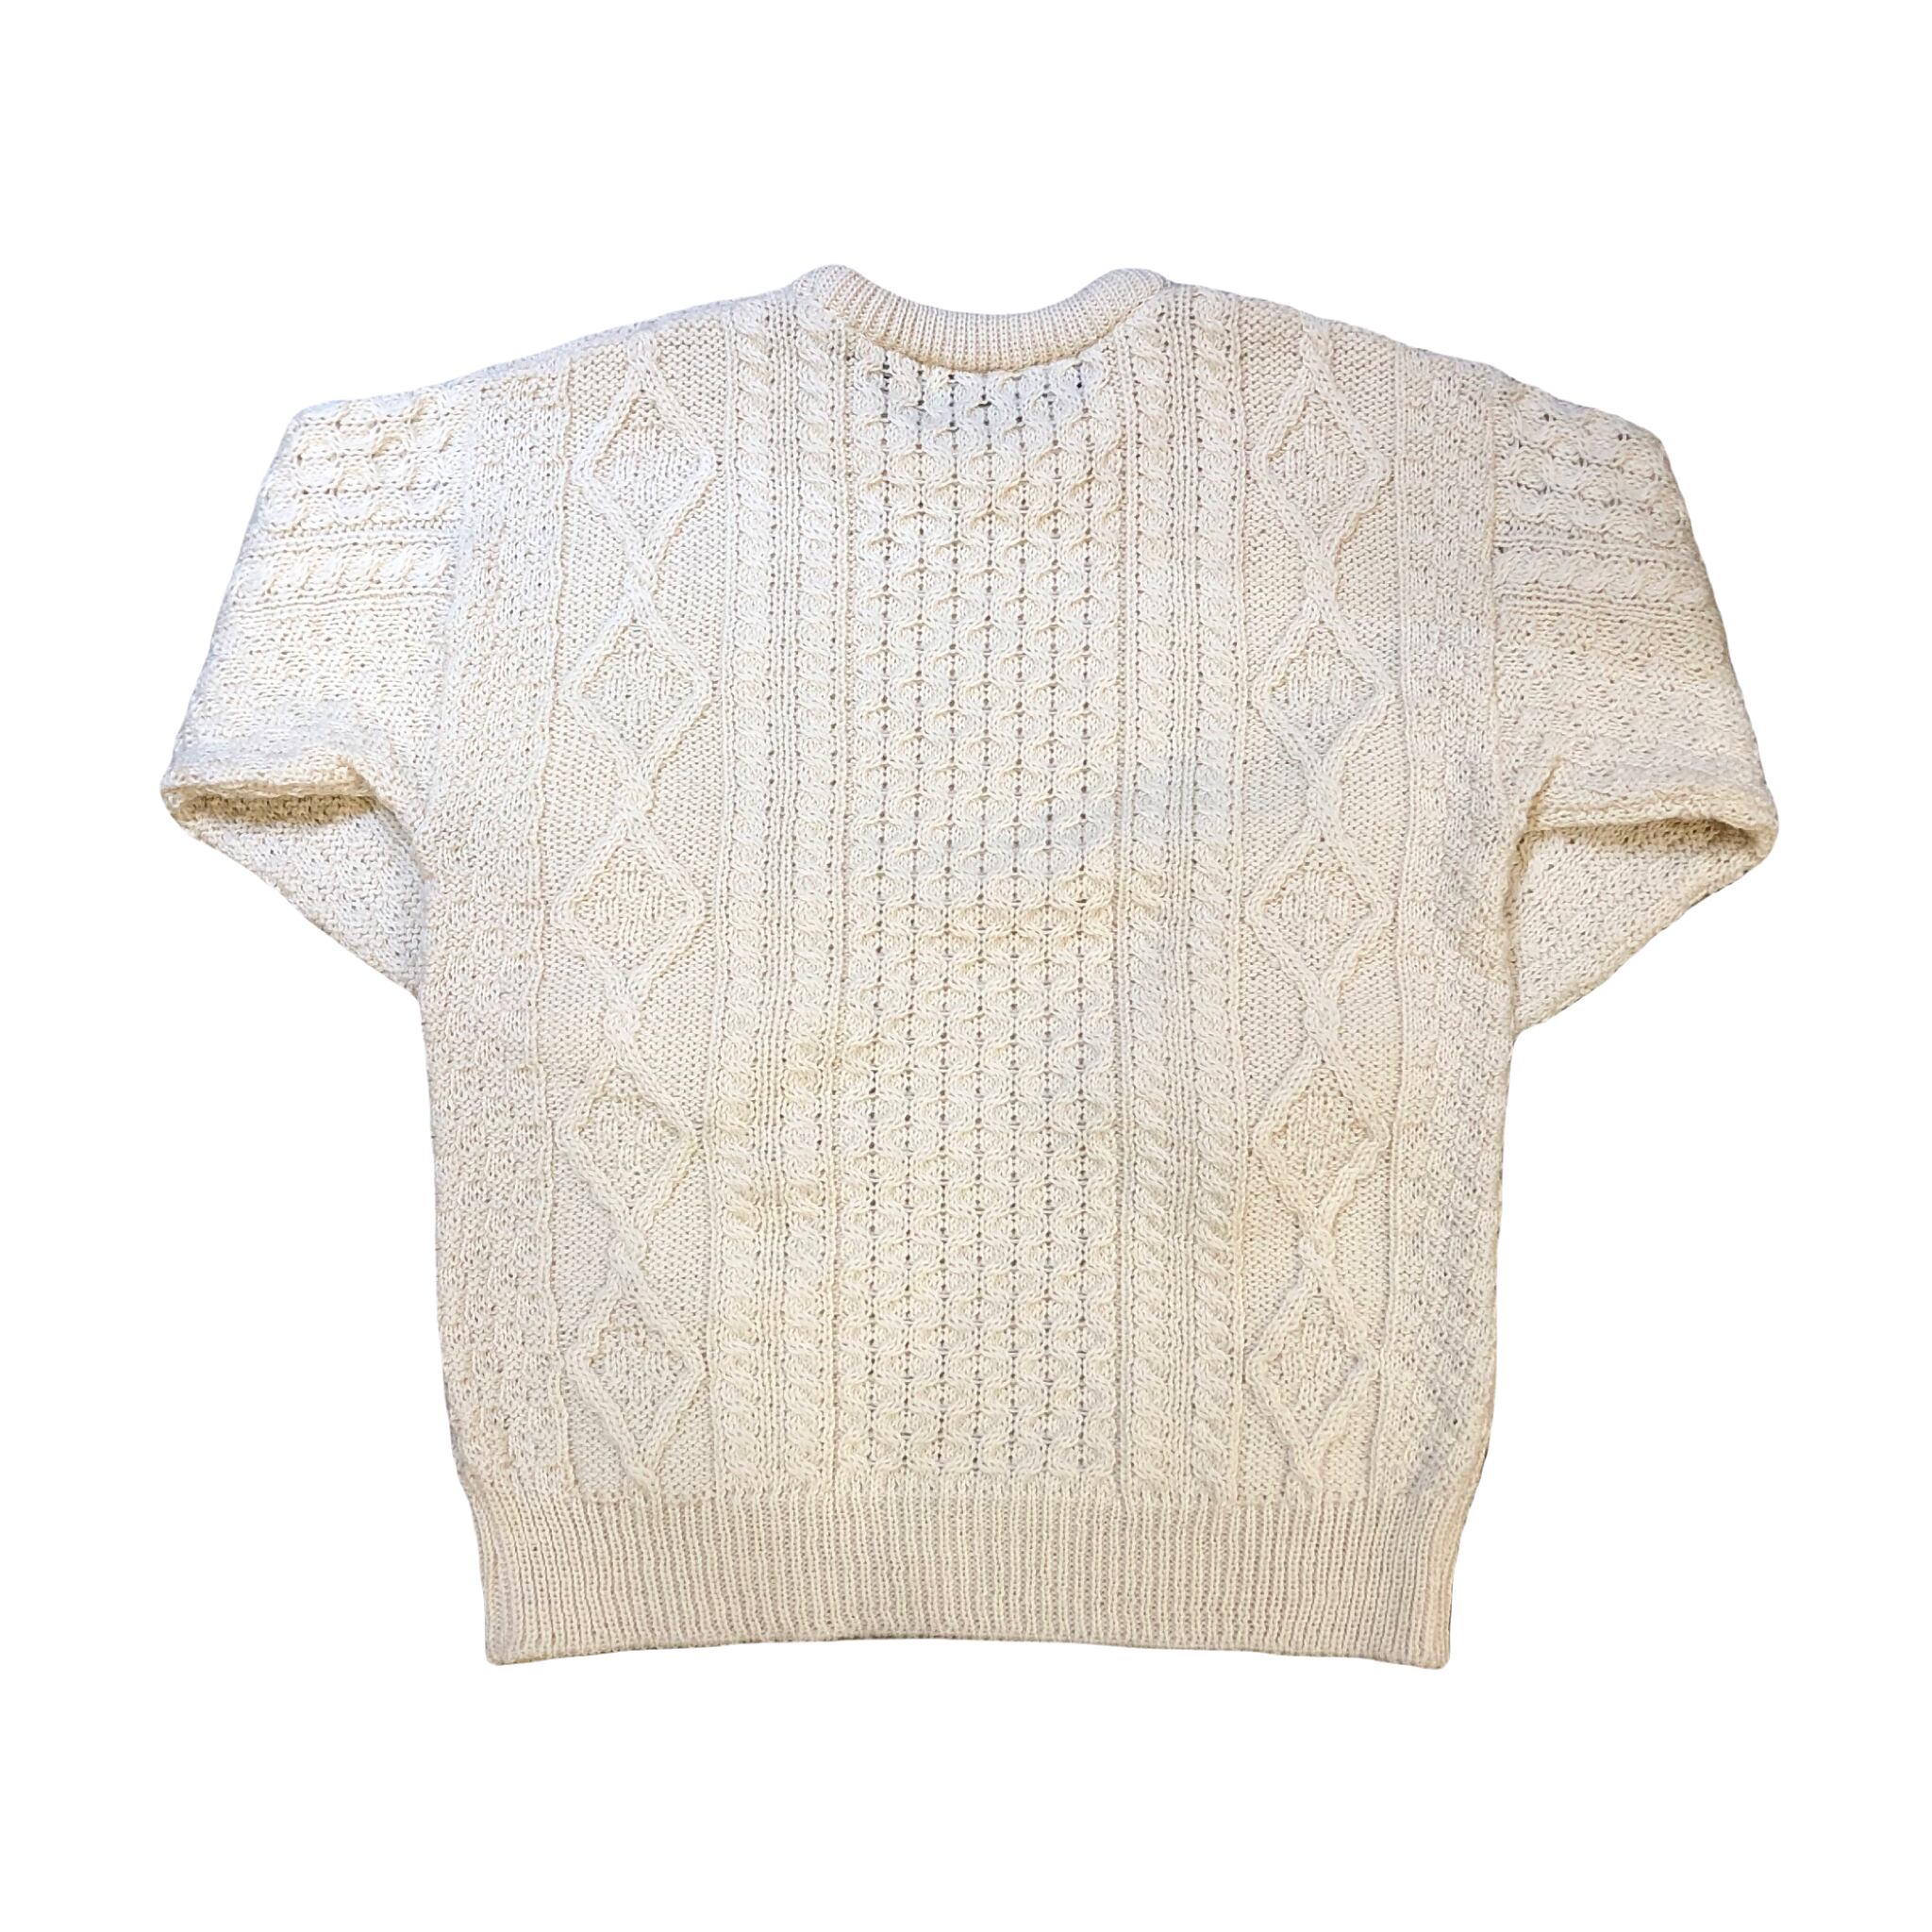 Aran Sweater Market Sweater ¥7,800+tax | BLUE VALENTINE